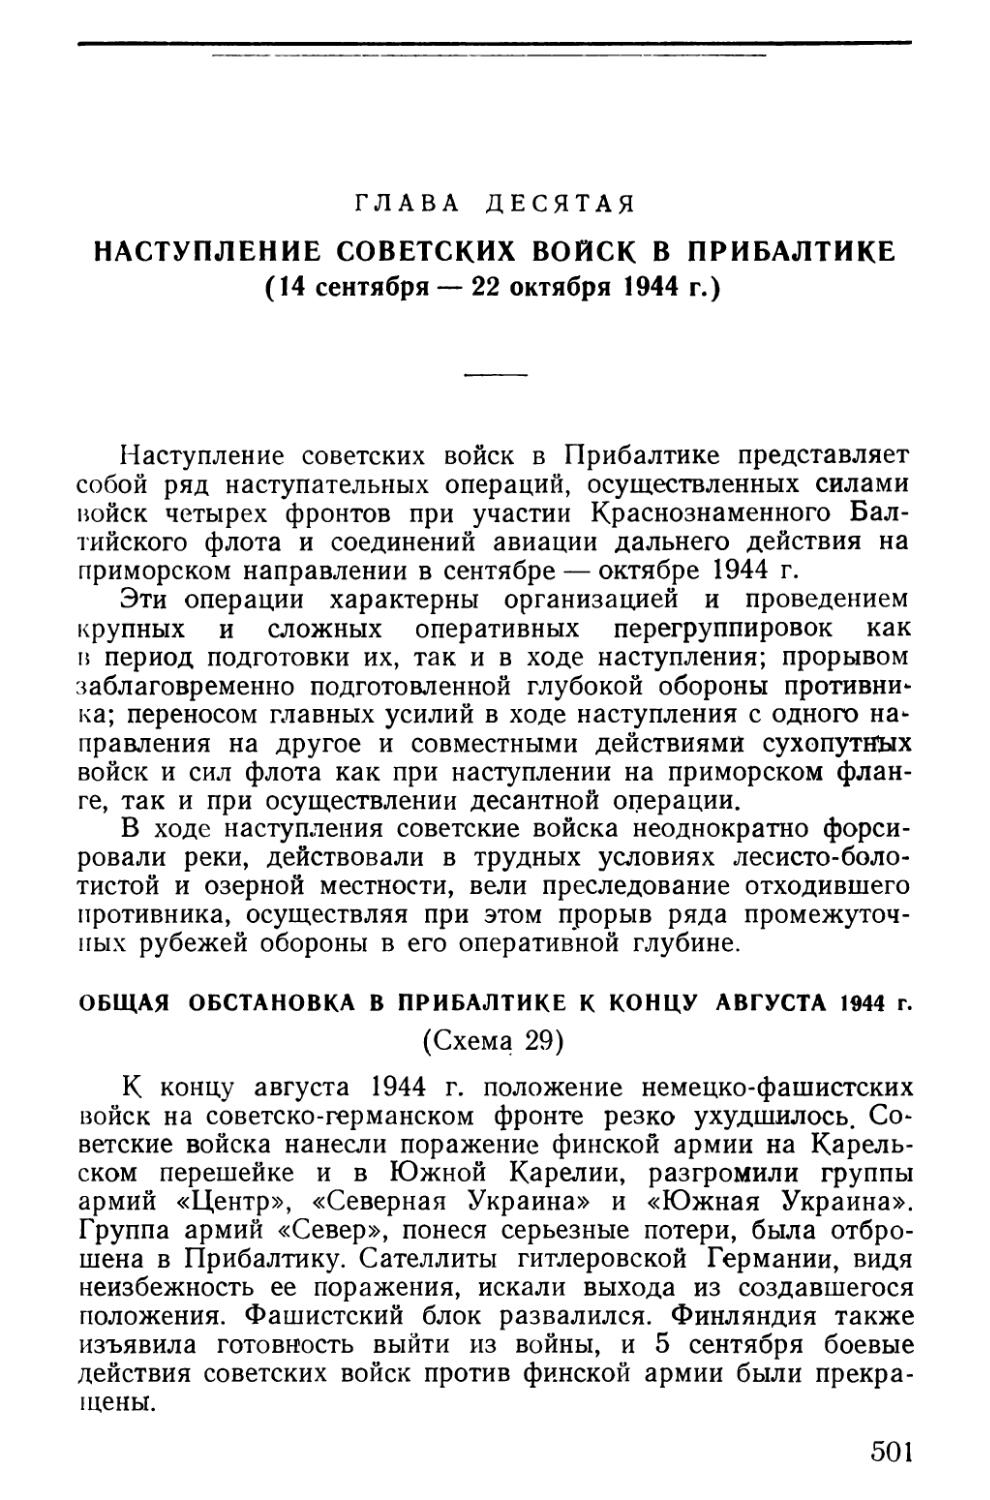 Общая обстановка в Прибалтике к концу августа 1944 г.